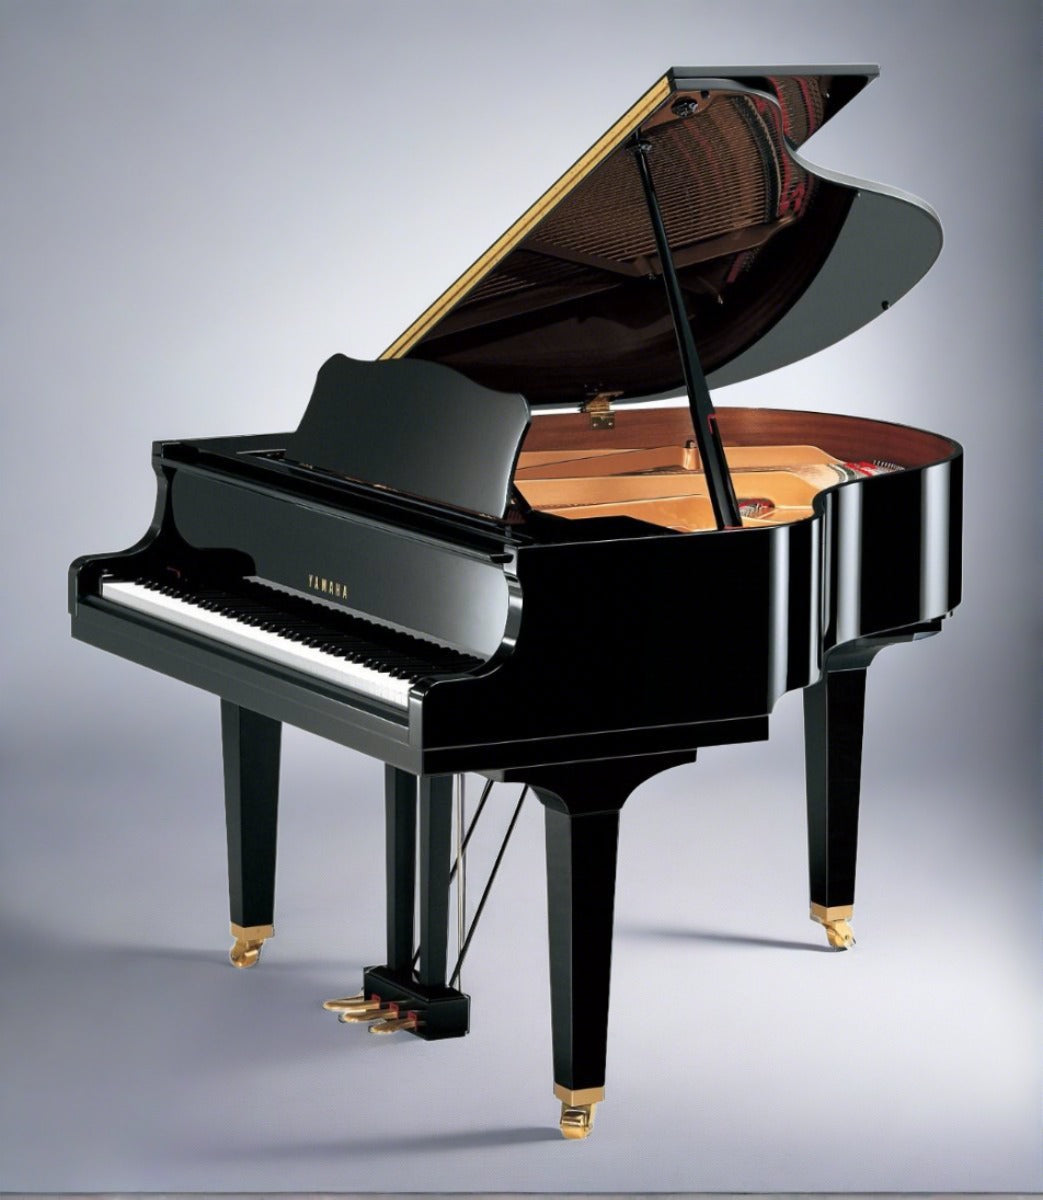 Yamaha U1 48 SILENT Professional Upright Piano